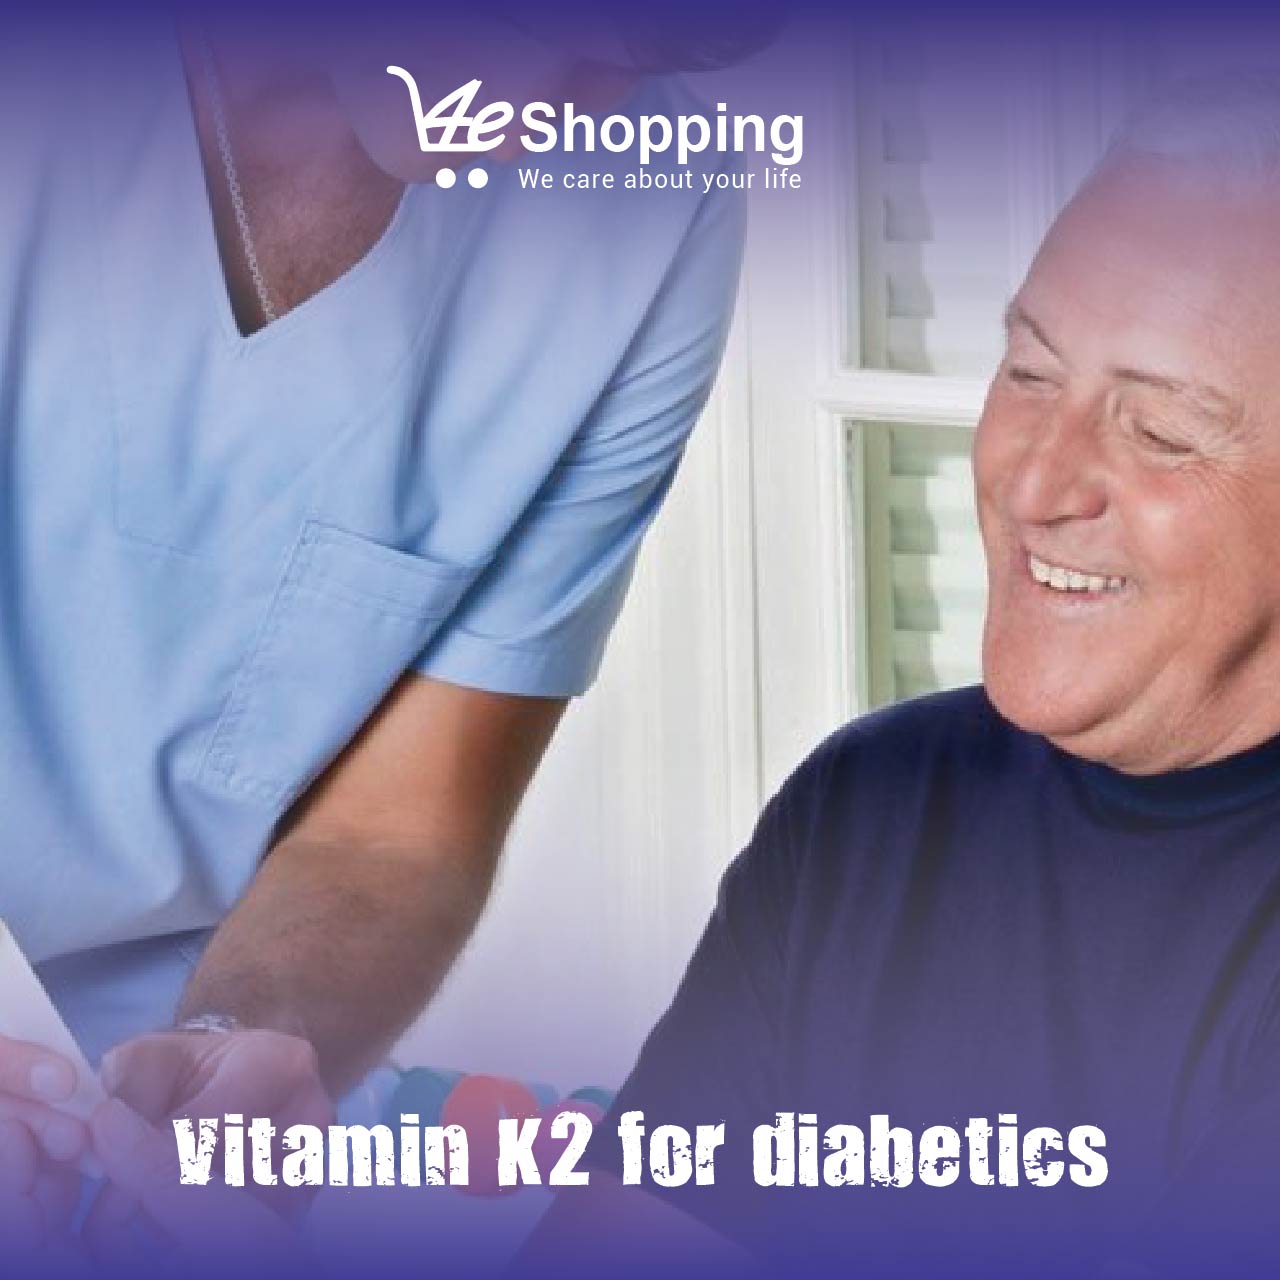 Vitamin K2 for diabetics